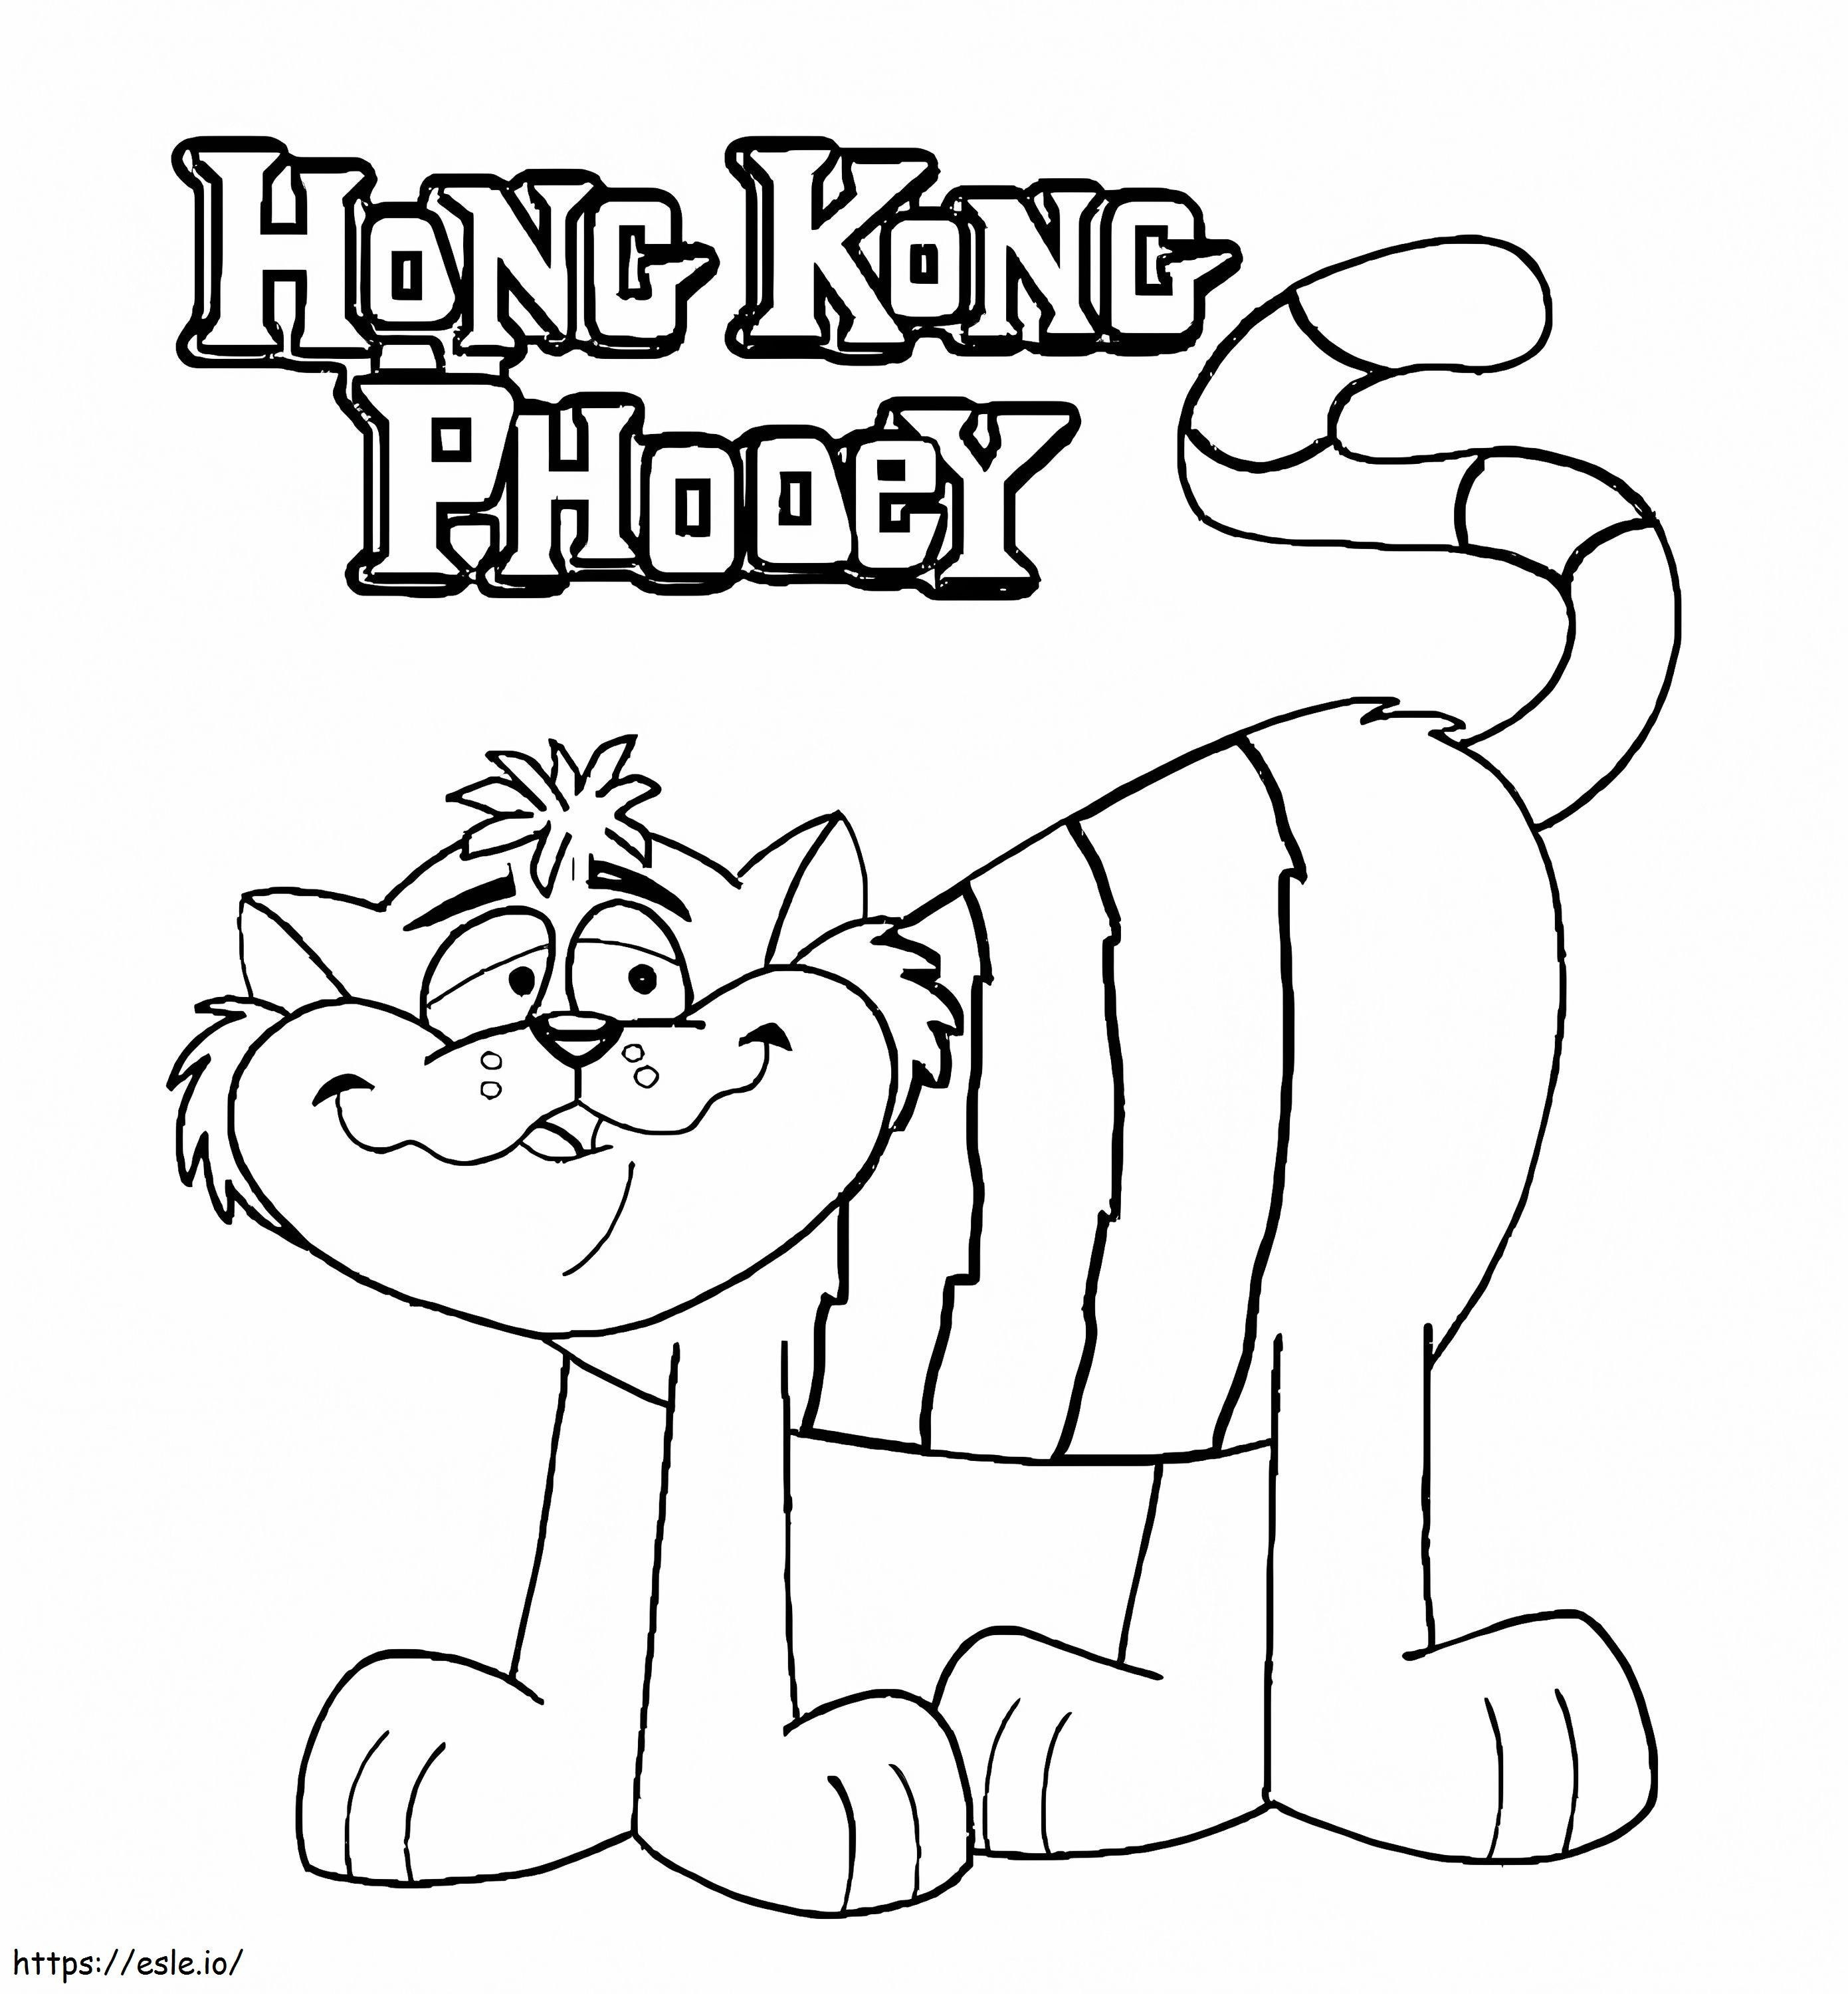 Temukan Hong Kong Phooey Gambar Mewarnai